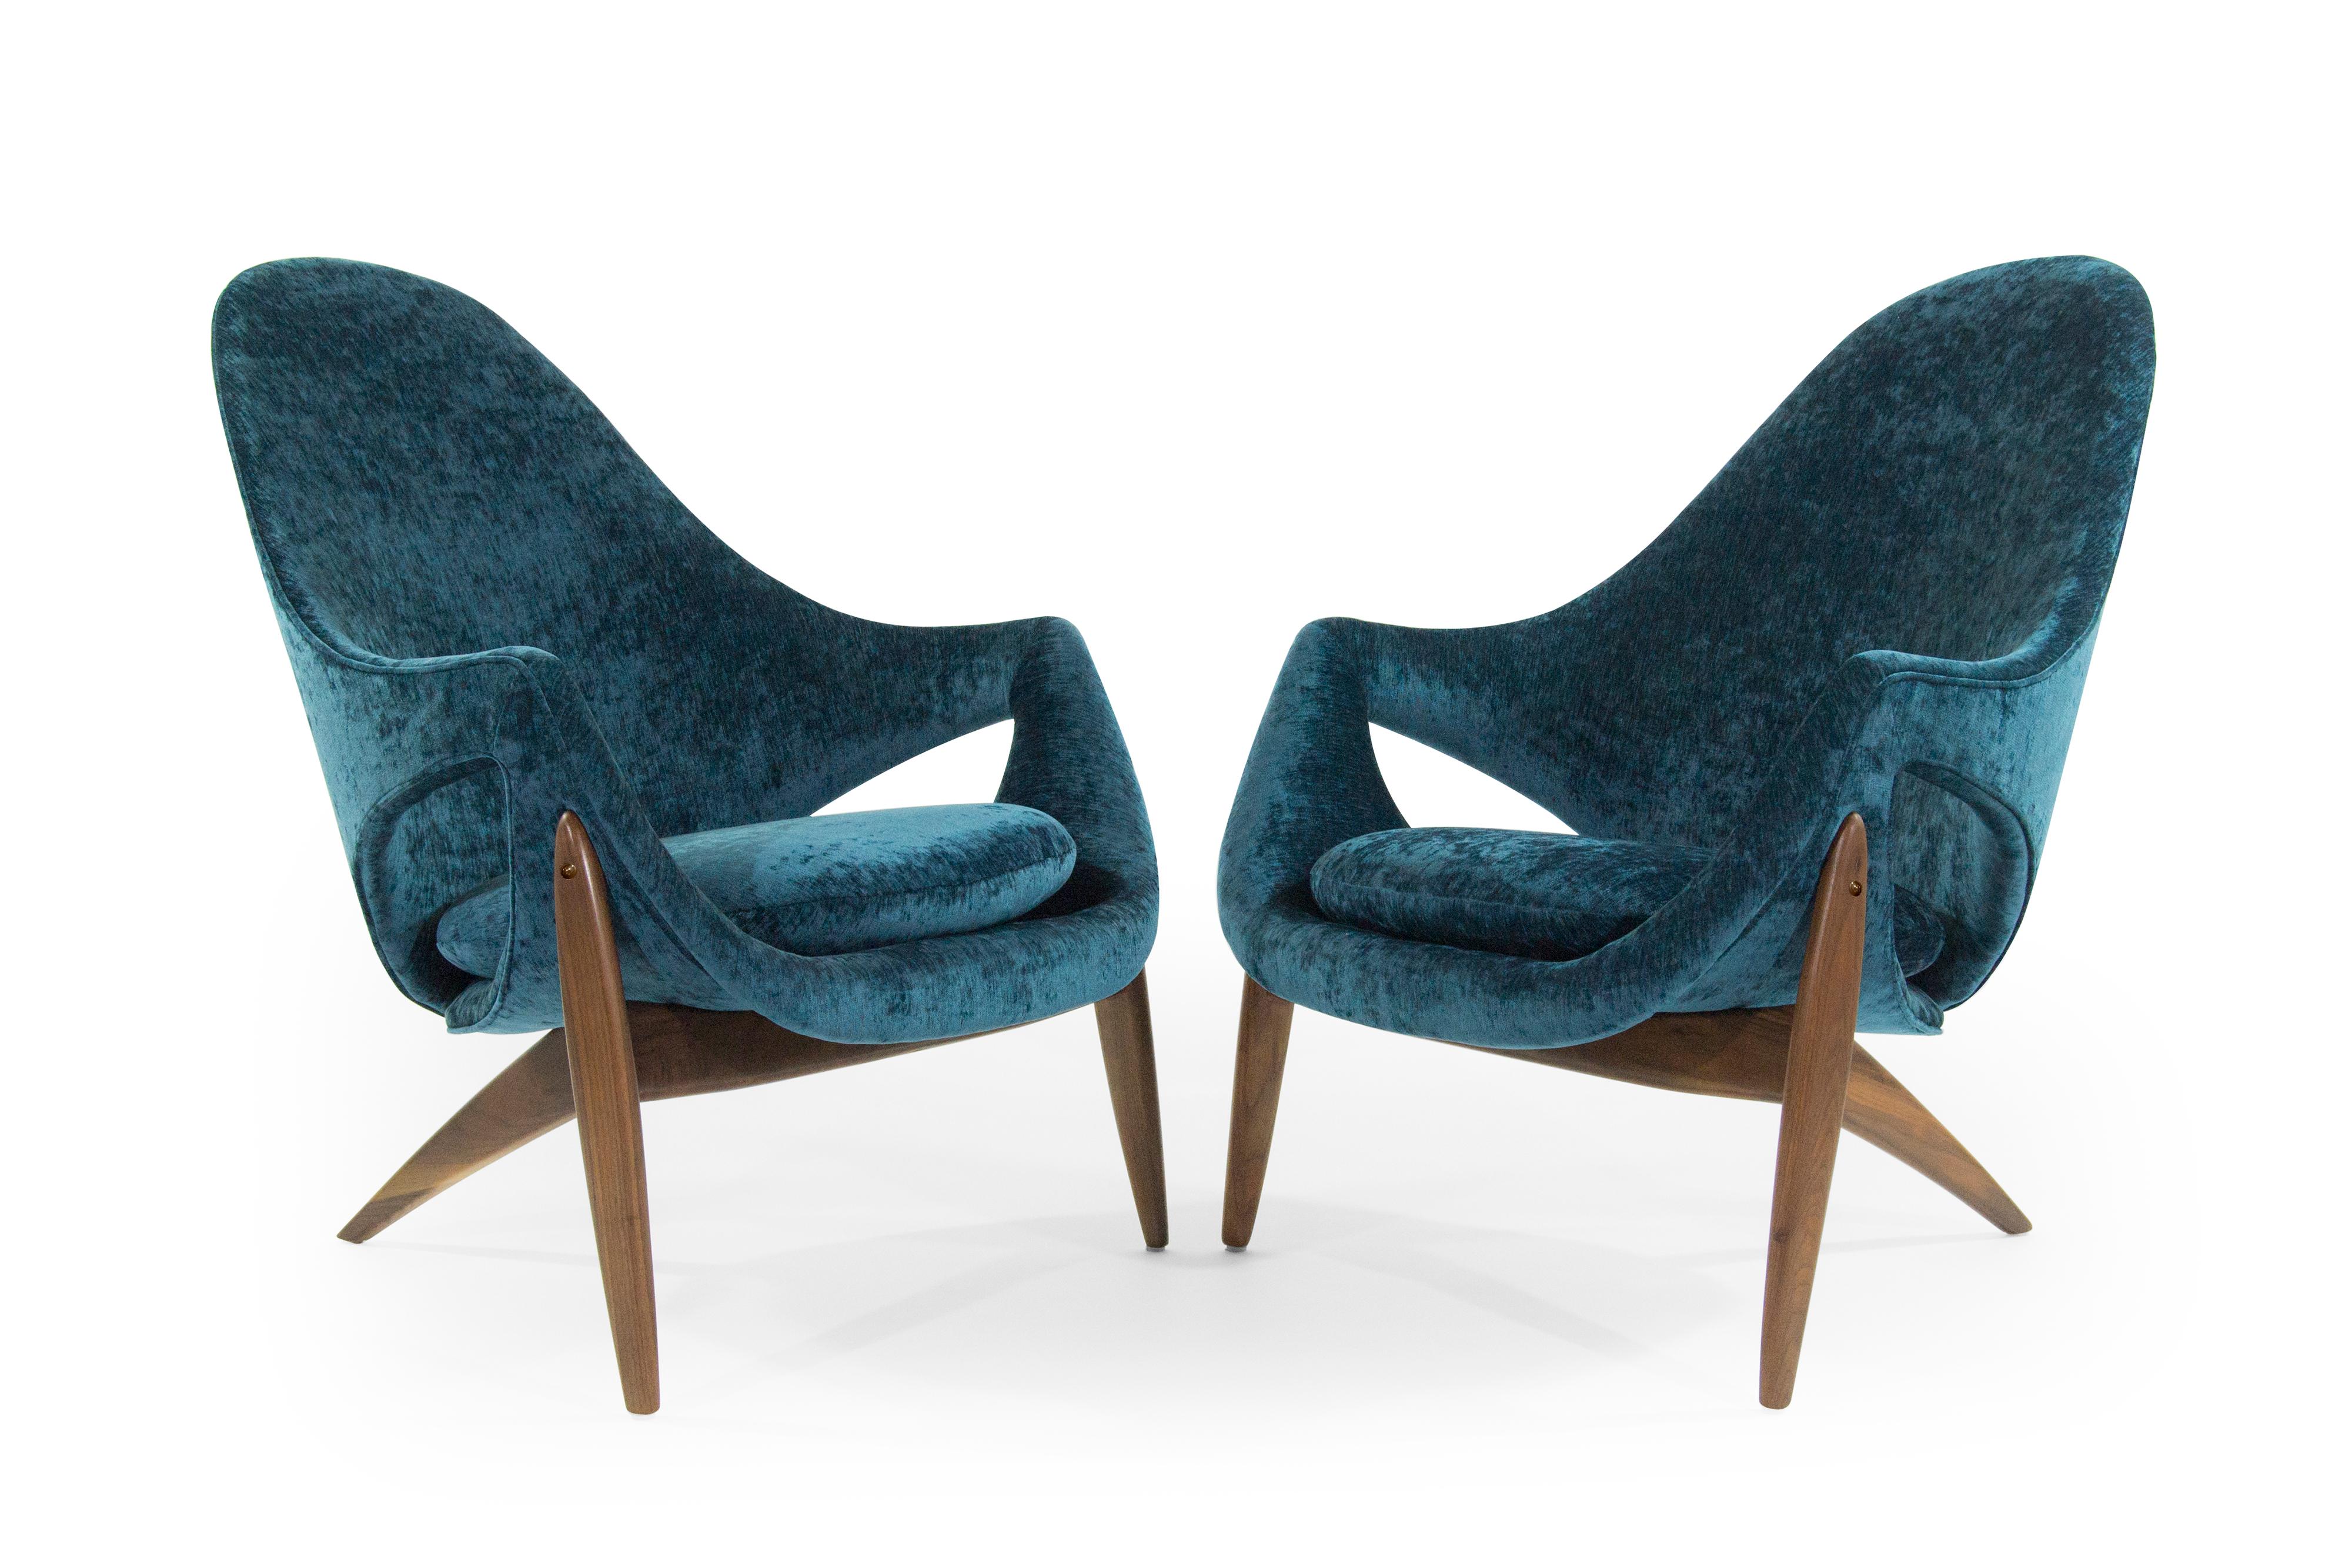 Seltene Stühle:: die von dem in Italien geborenen Möbeldesigner Luigi Tiengo entworfen und 1963 von dem kanadischen Hersteller Cimon produziert wurden. Skulpturale Form mit dreibeinigem:: vollständig restauriertem Nussbaumgestell:: neu gepolstert